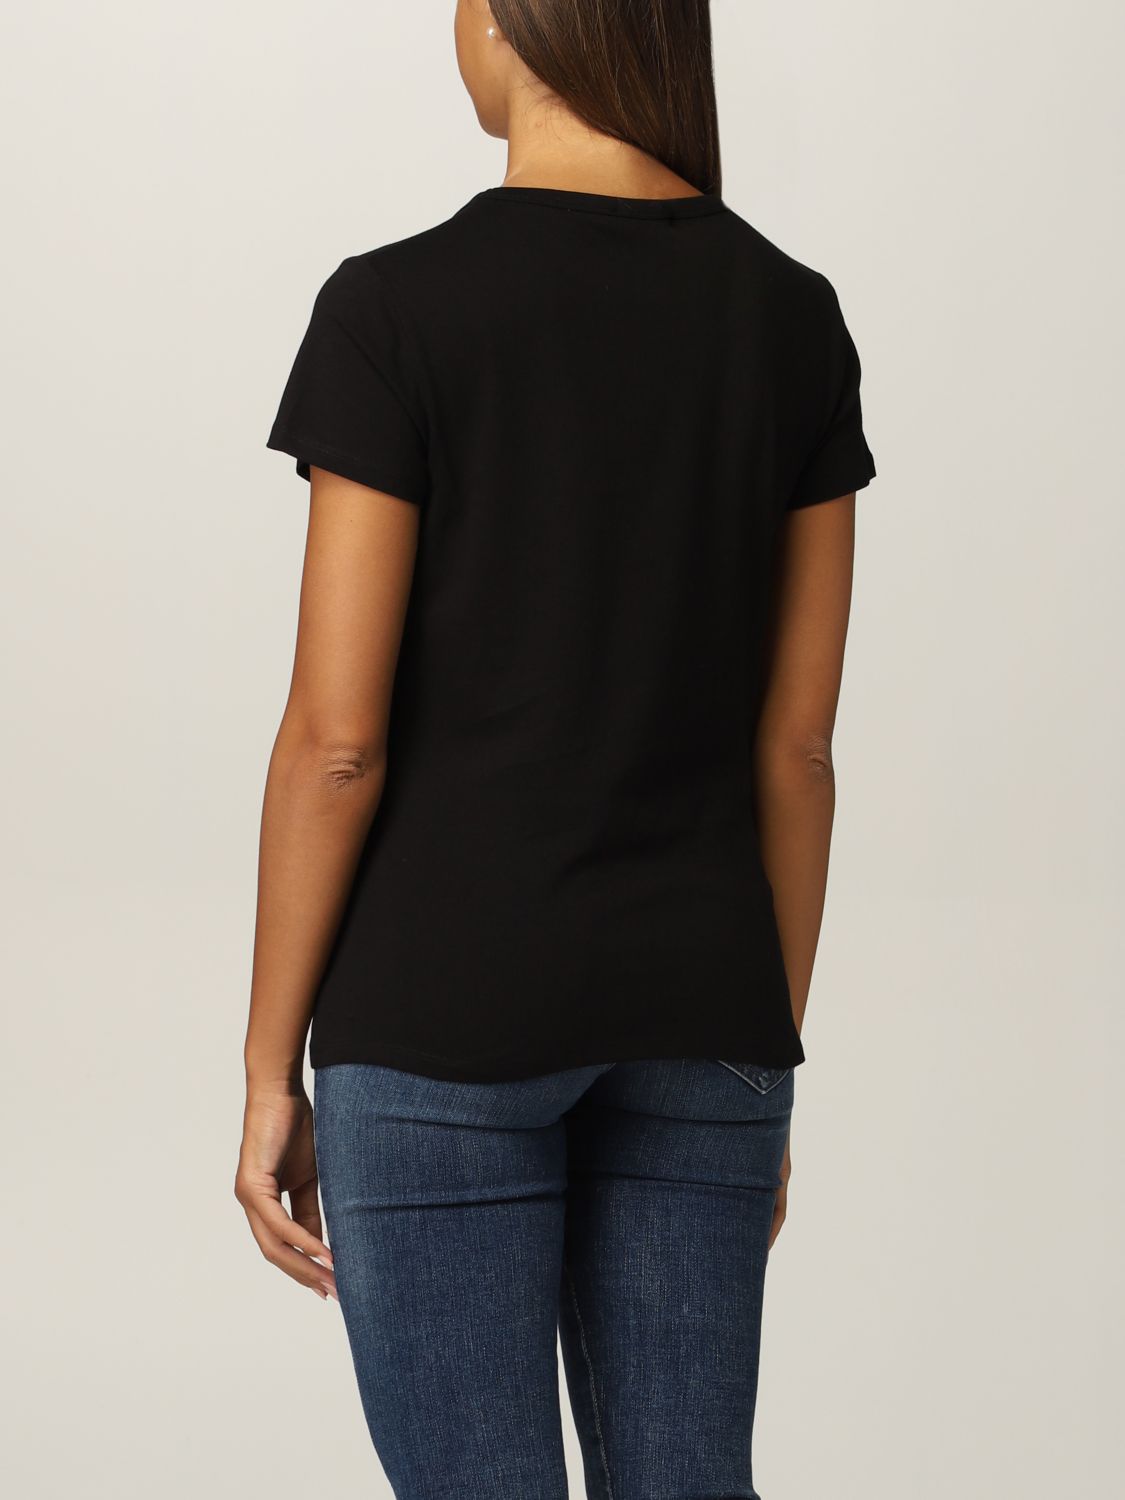 T-Shirt Just Cavalli: T-shirt women Just Cavalli black 2